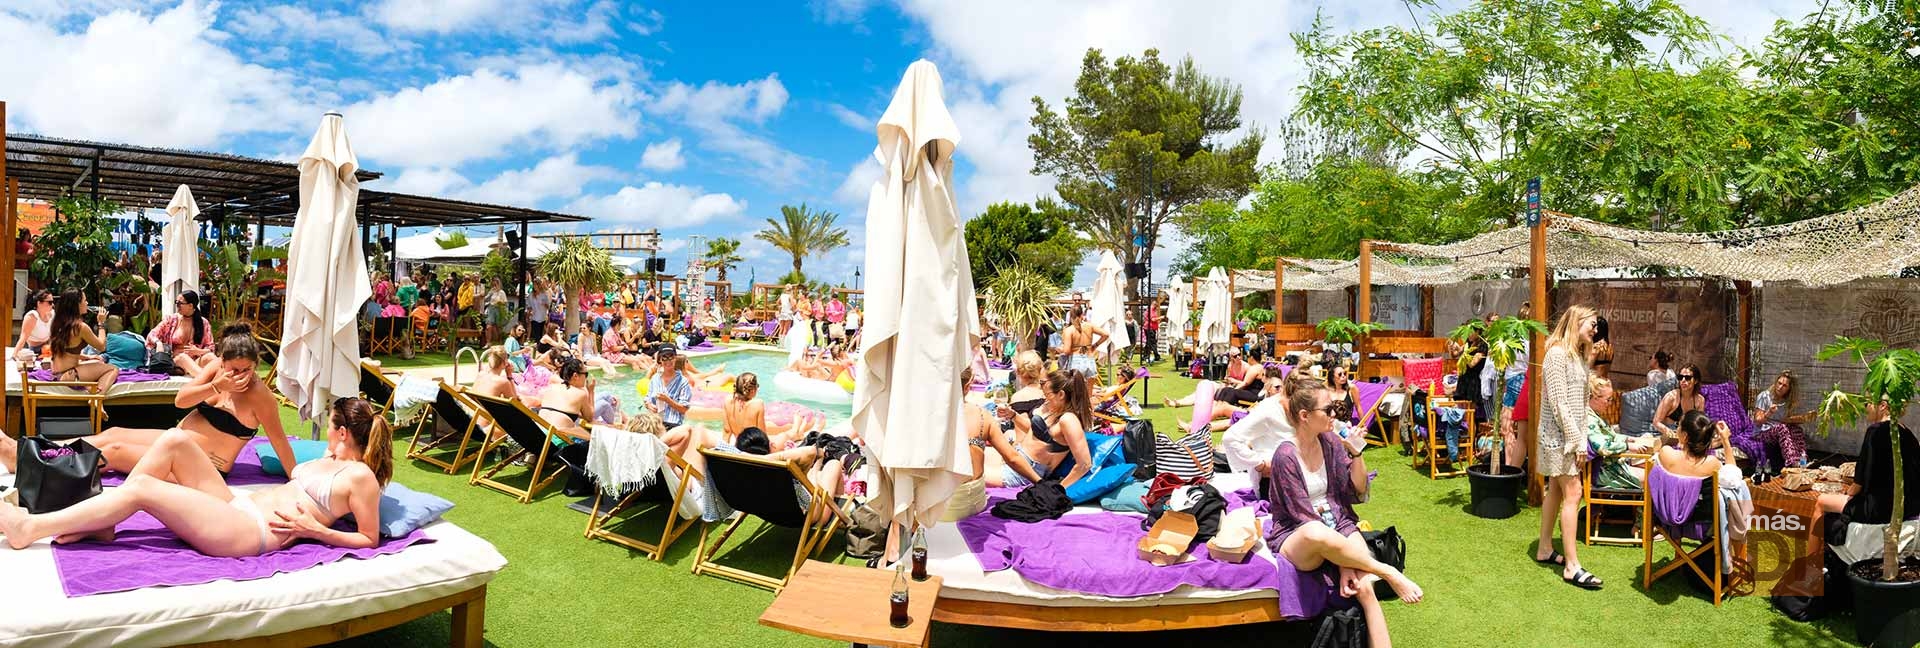 Surf Lounge Ibiza, experiencias que dejan huella